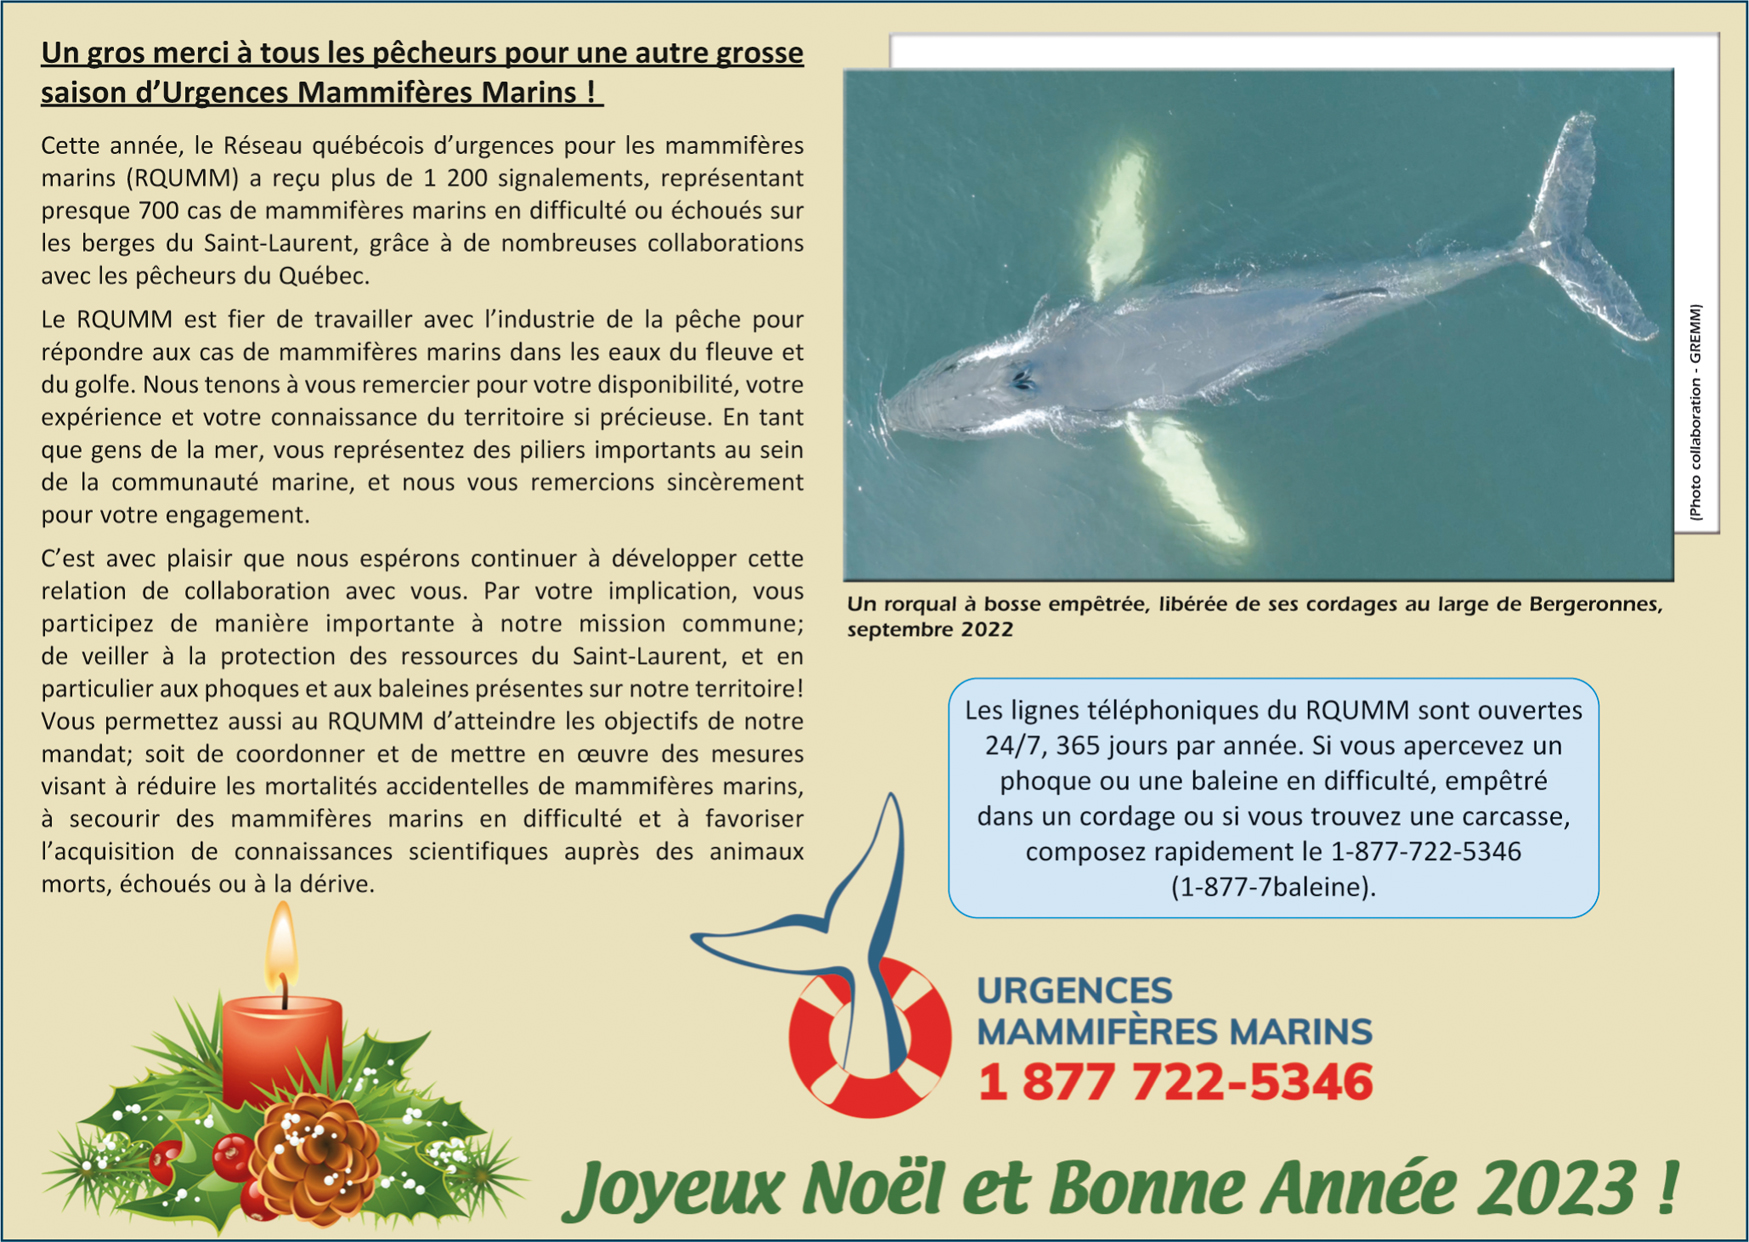 Réseau québécois d'urgences pour les mammifères marins - GREMM